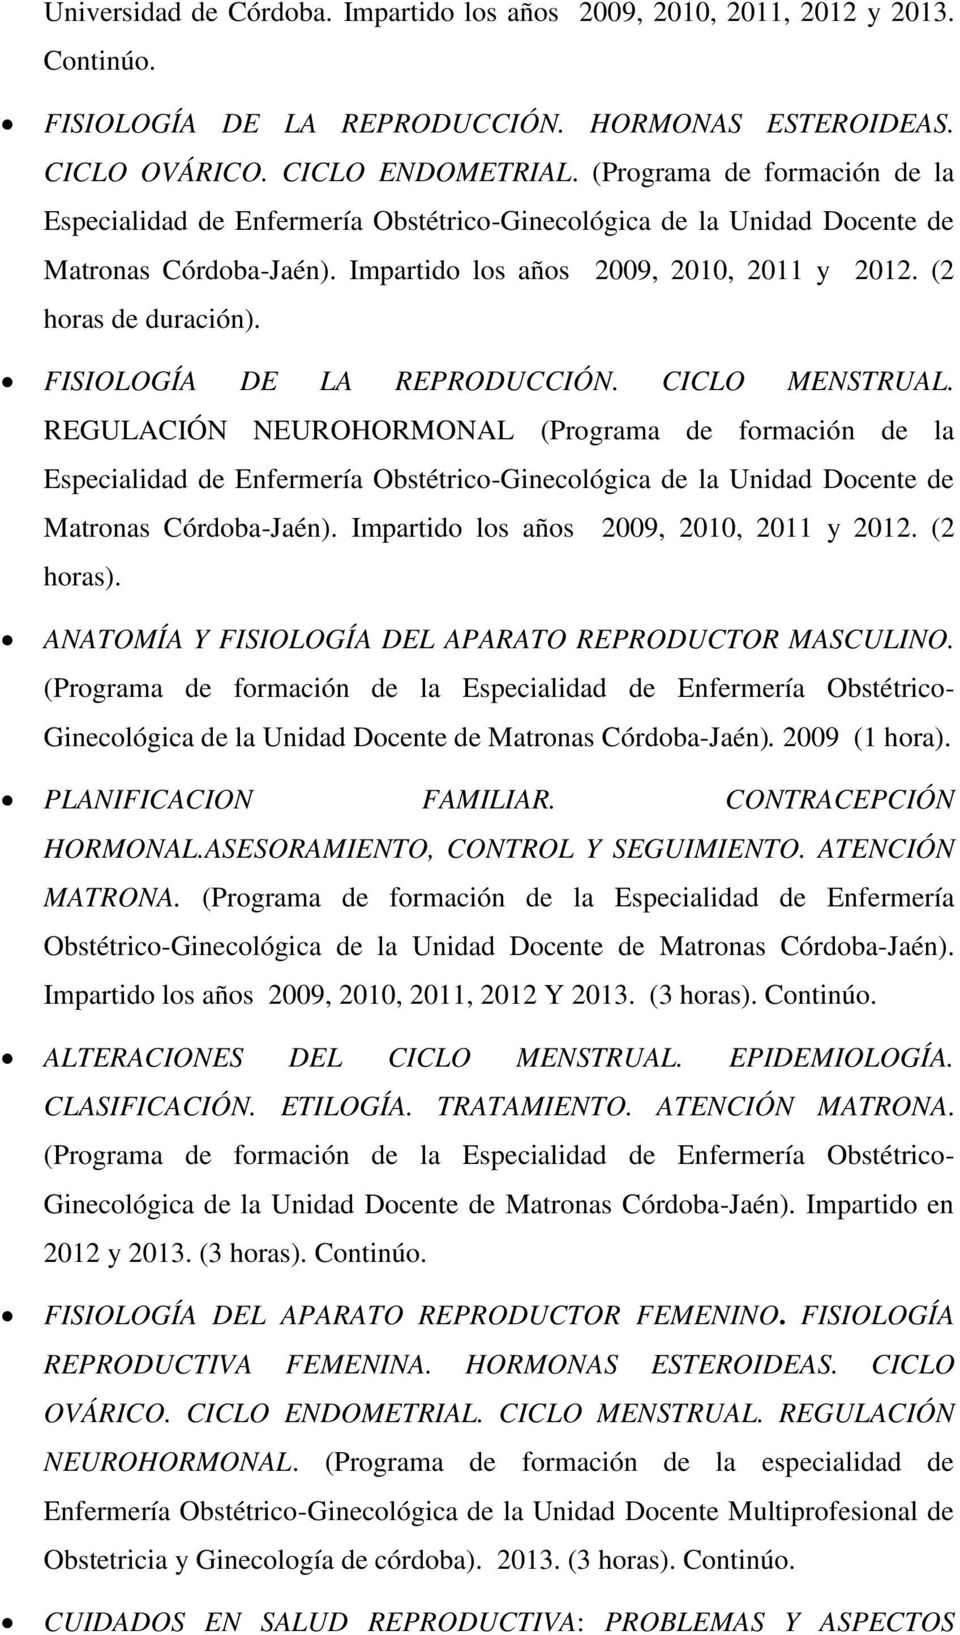 FISIOLOGÍA DE LA REPRODUCCIÓN. CICLO MENSTRUAL. REGULACIÓN NEUROHORMONAL (Programa de formación de la Especialidad de Enfermería Obstétrico-Ginecológica de la Unidad Docente de Matronas Córdoba-Jaén).